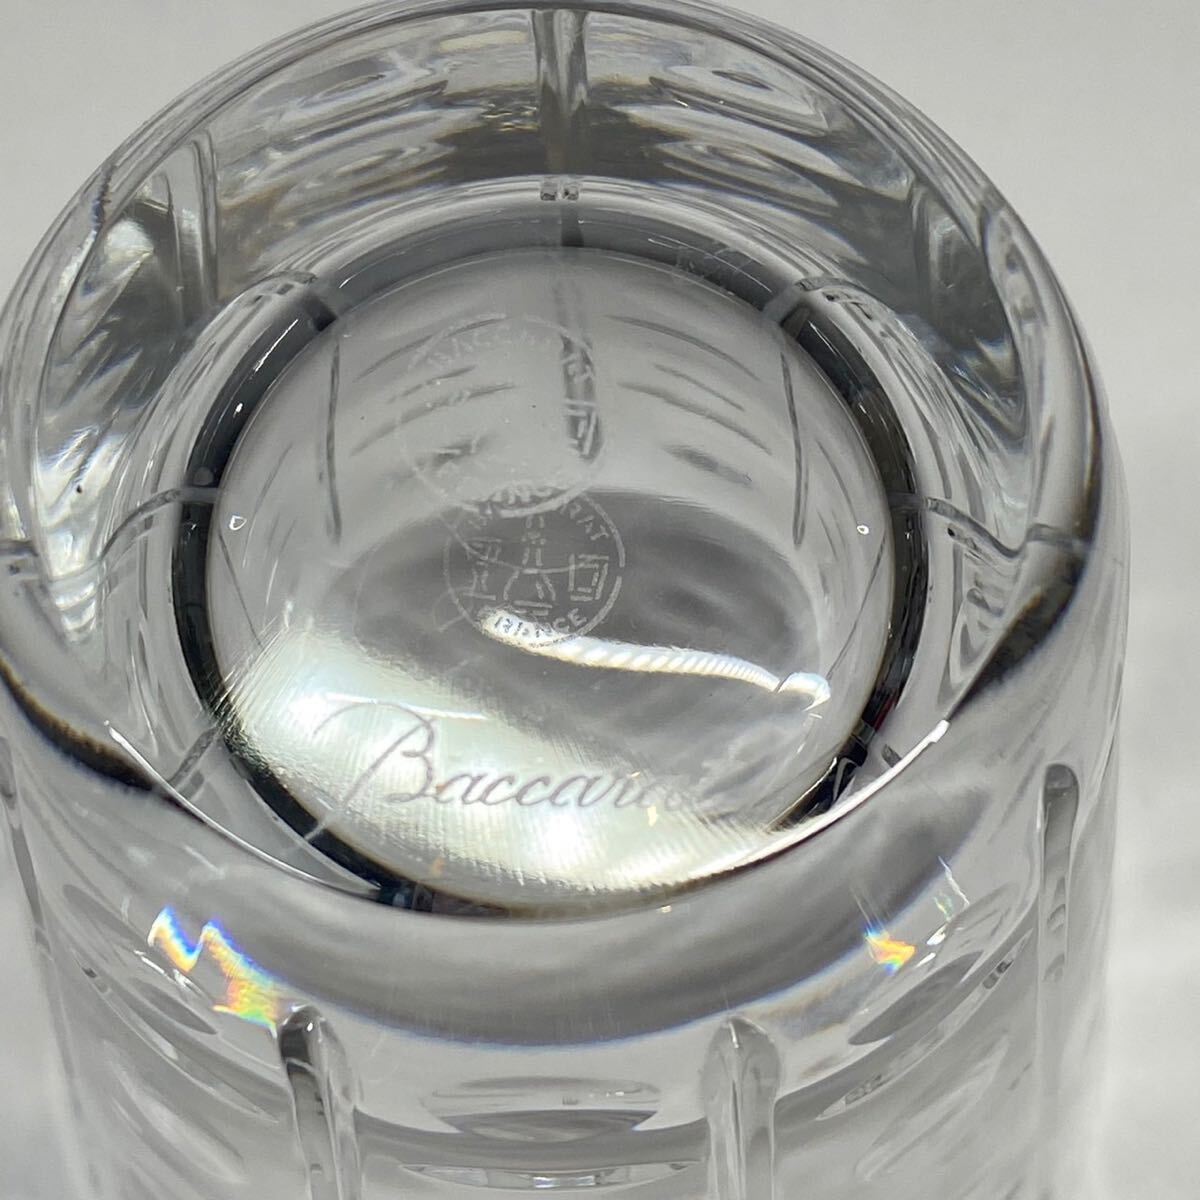 Baccarat バカラ タンブラー クリスタルガラス エキノックス ブランド食器 グラス_画像5